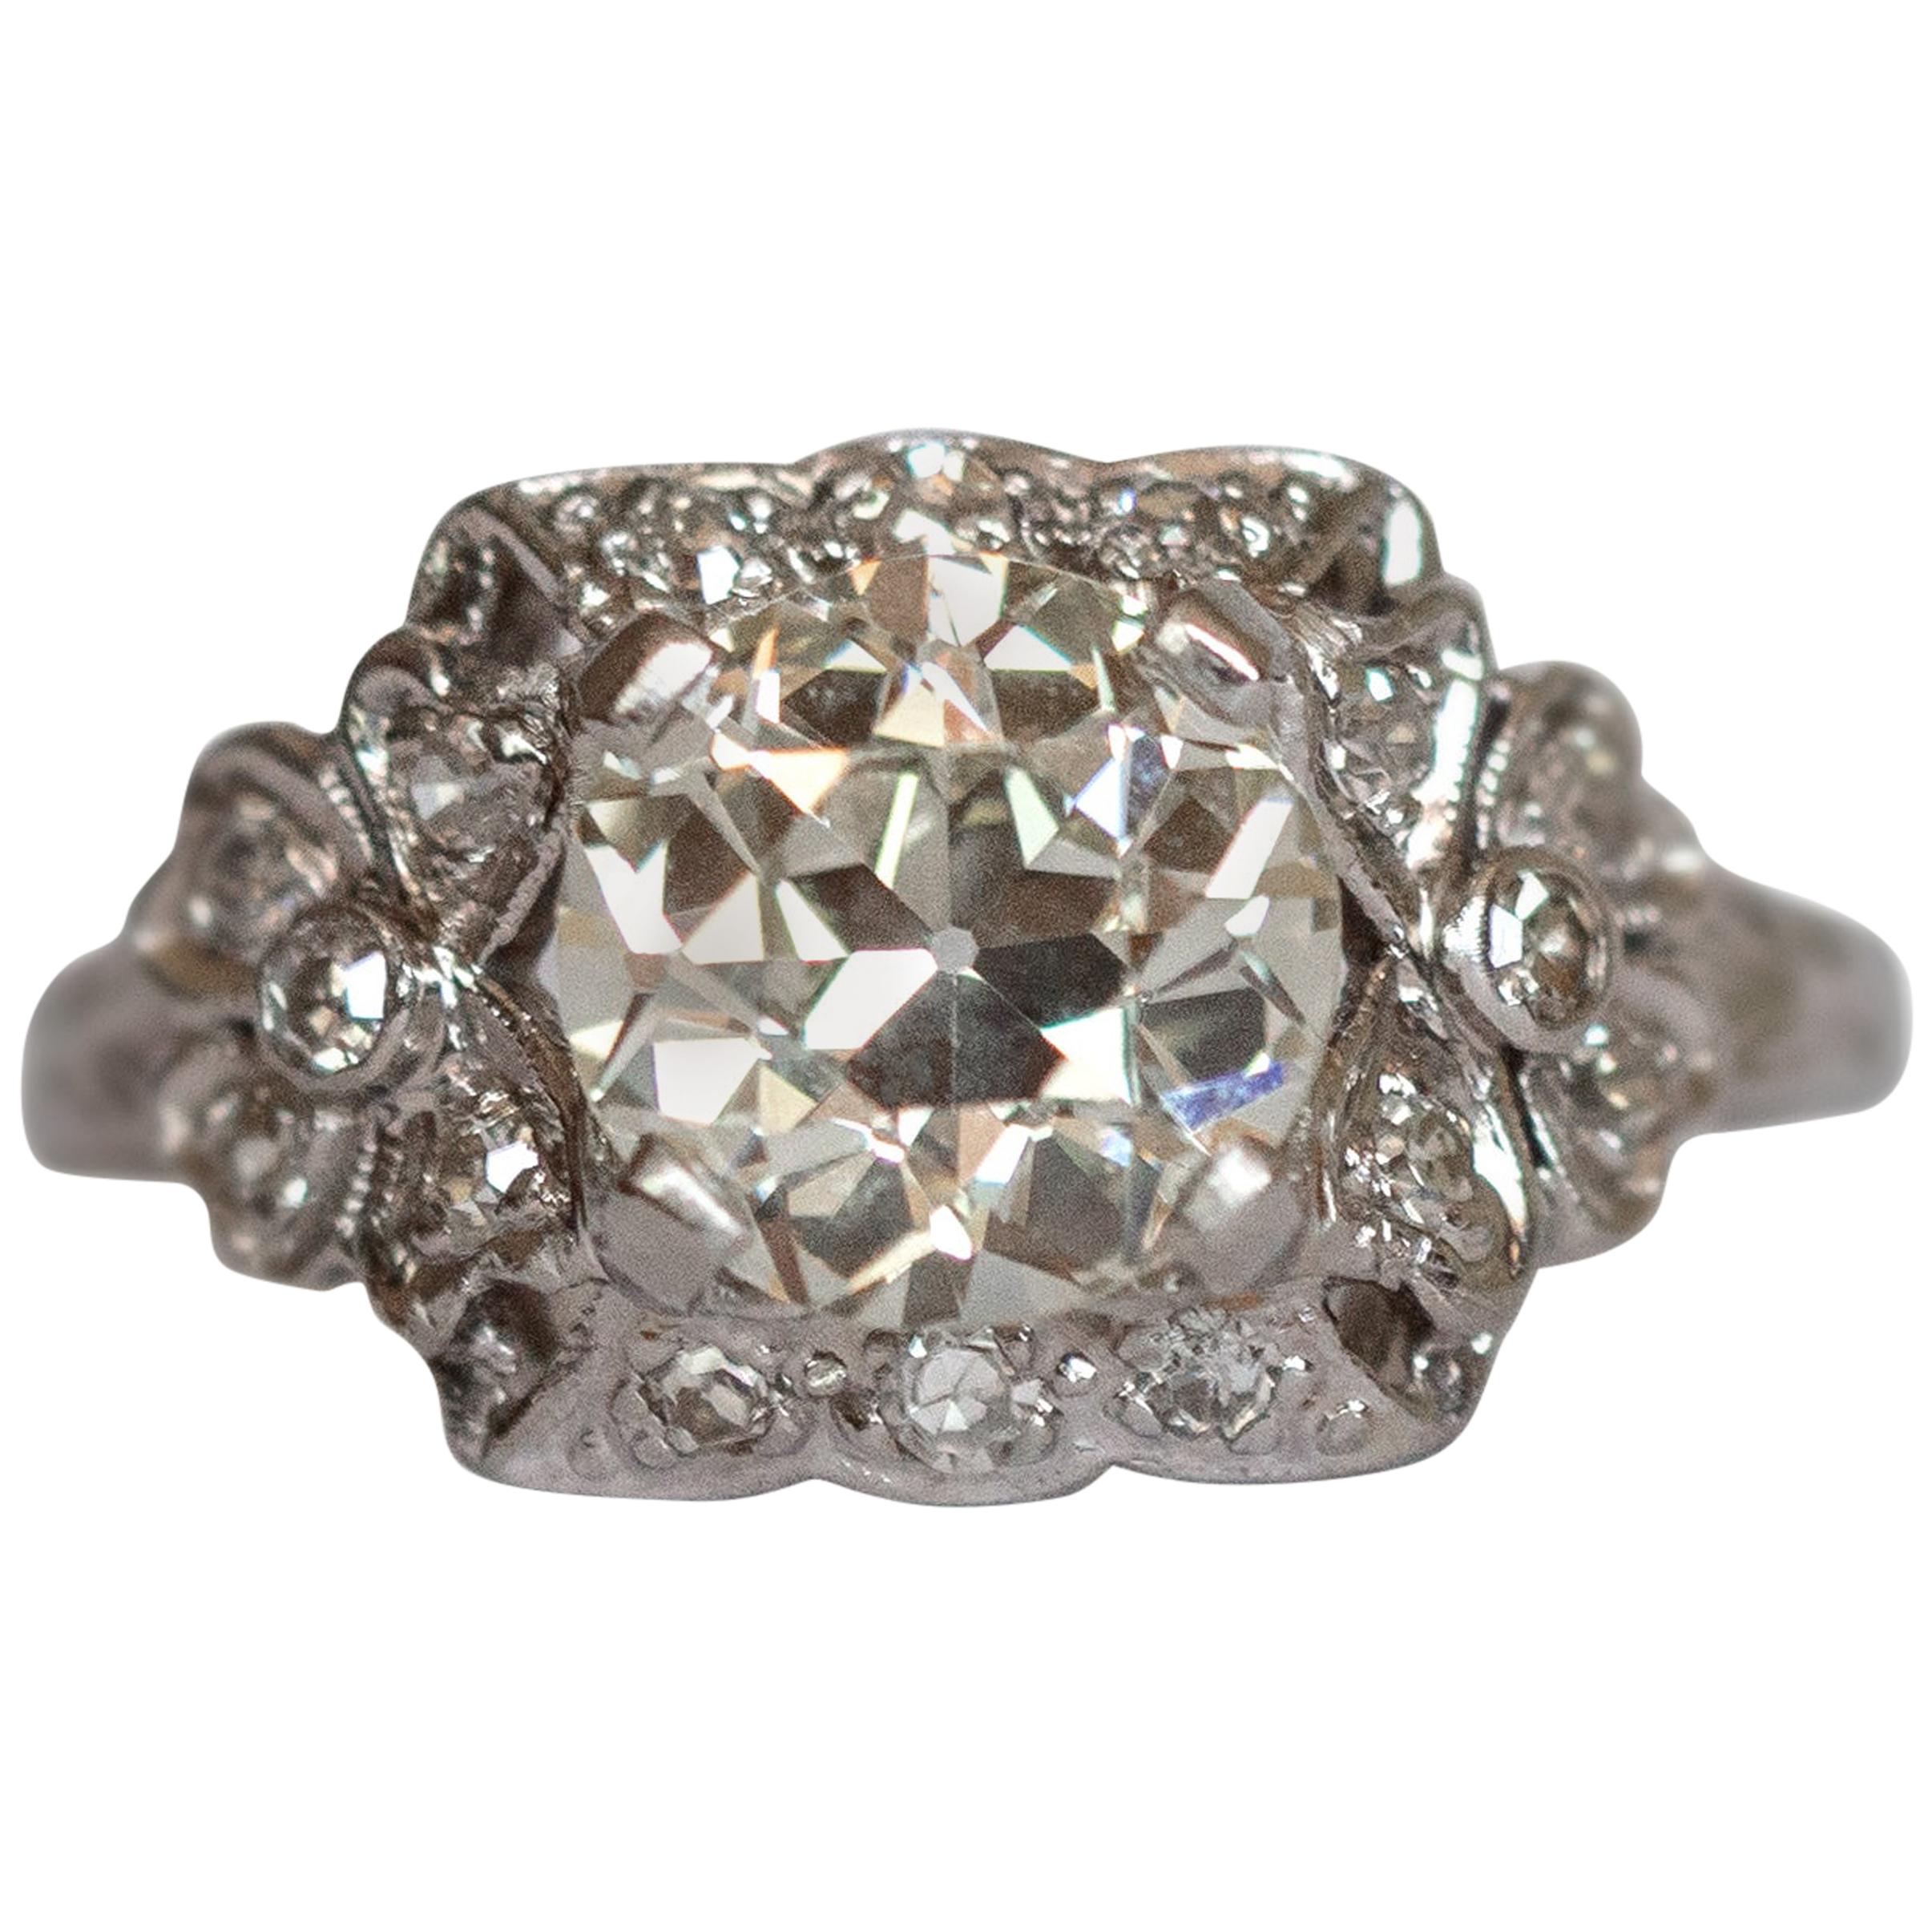 GIA Certified 1.68 Carat Diamond Platinum Engagement Ring